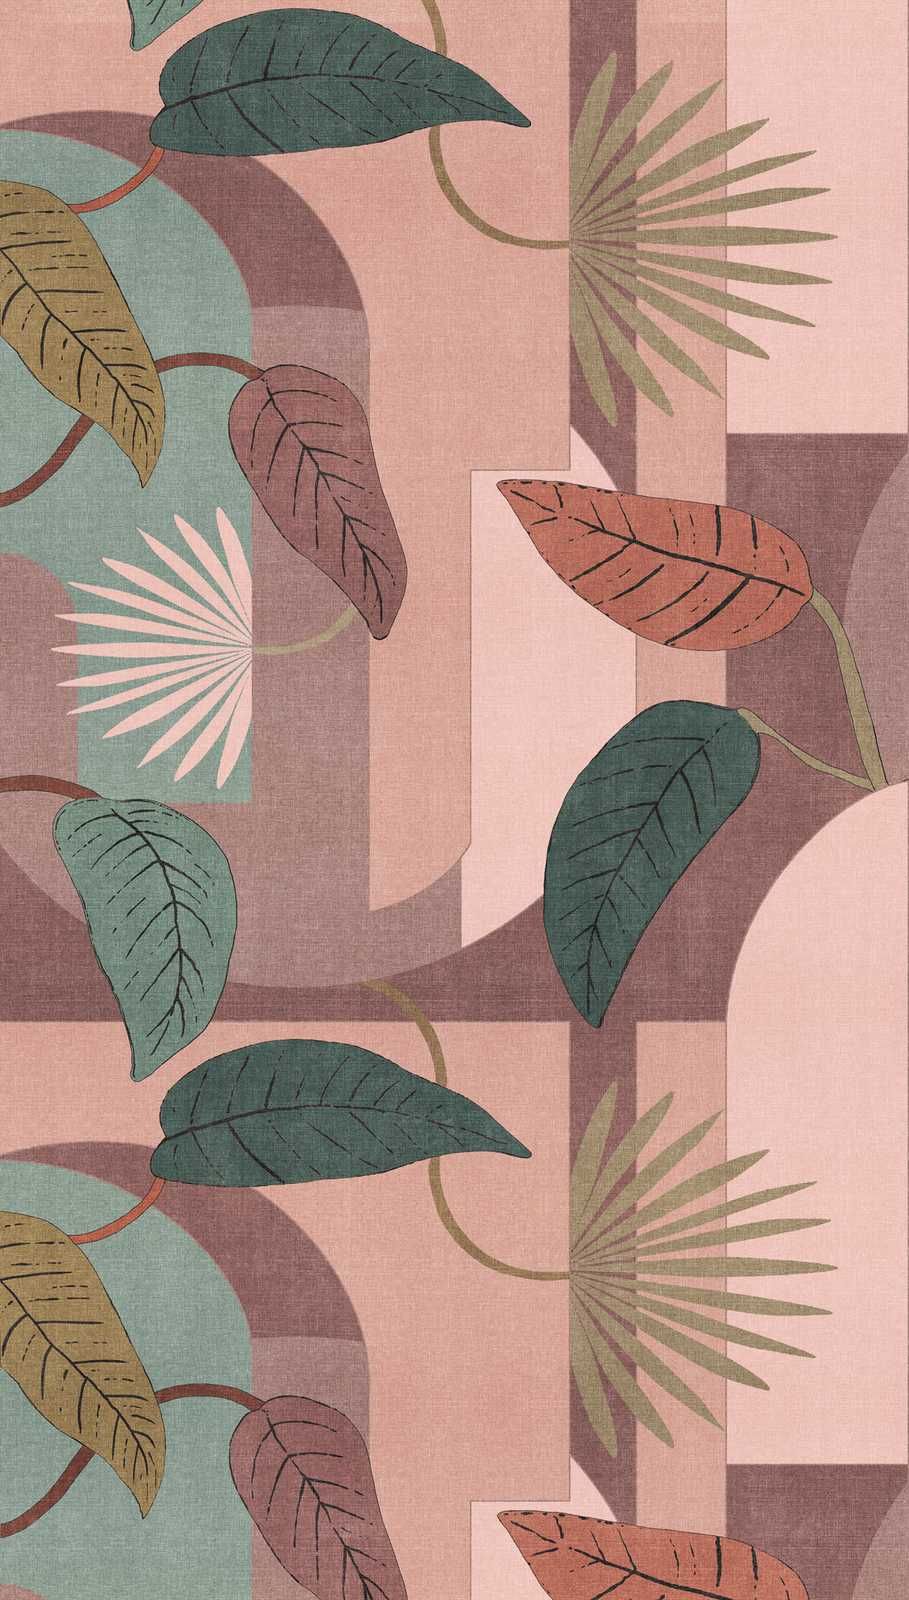             Papier peint intissé avec motif floral de feuilles et formes abstraites - rose, turquoise, beige
        